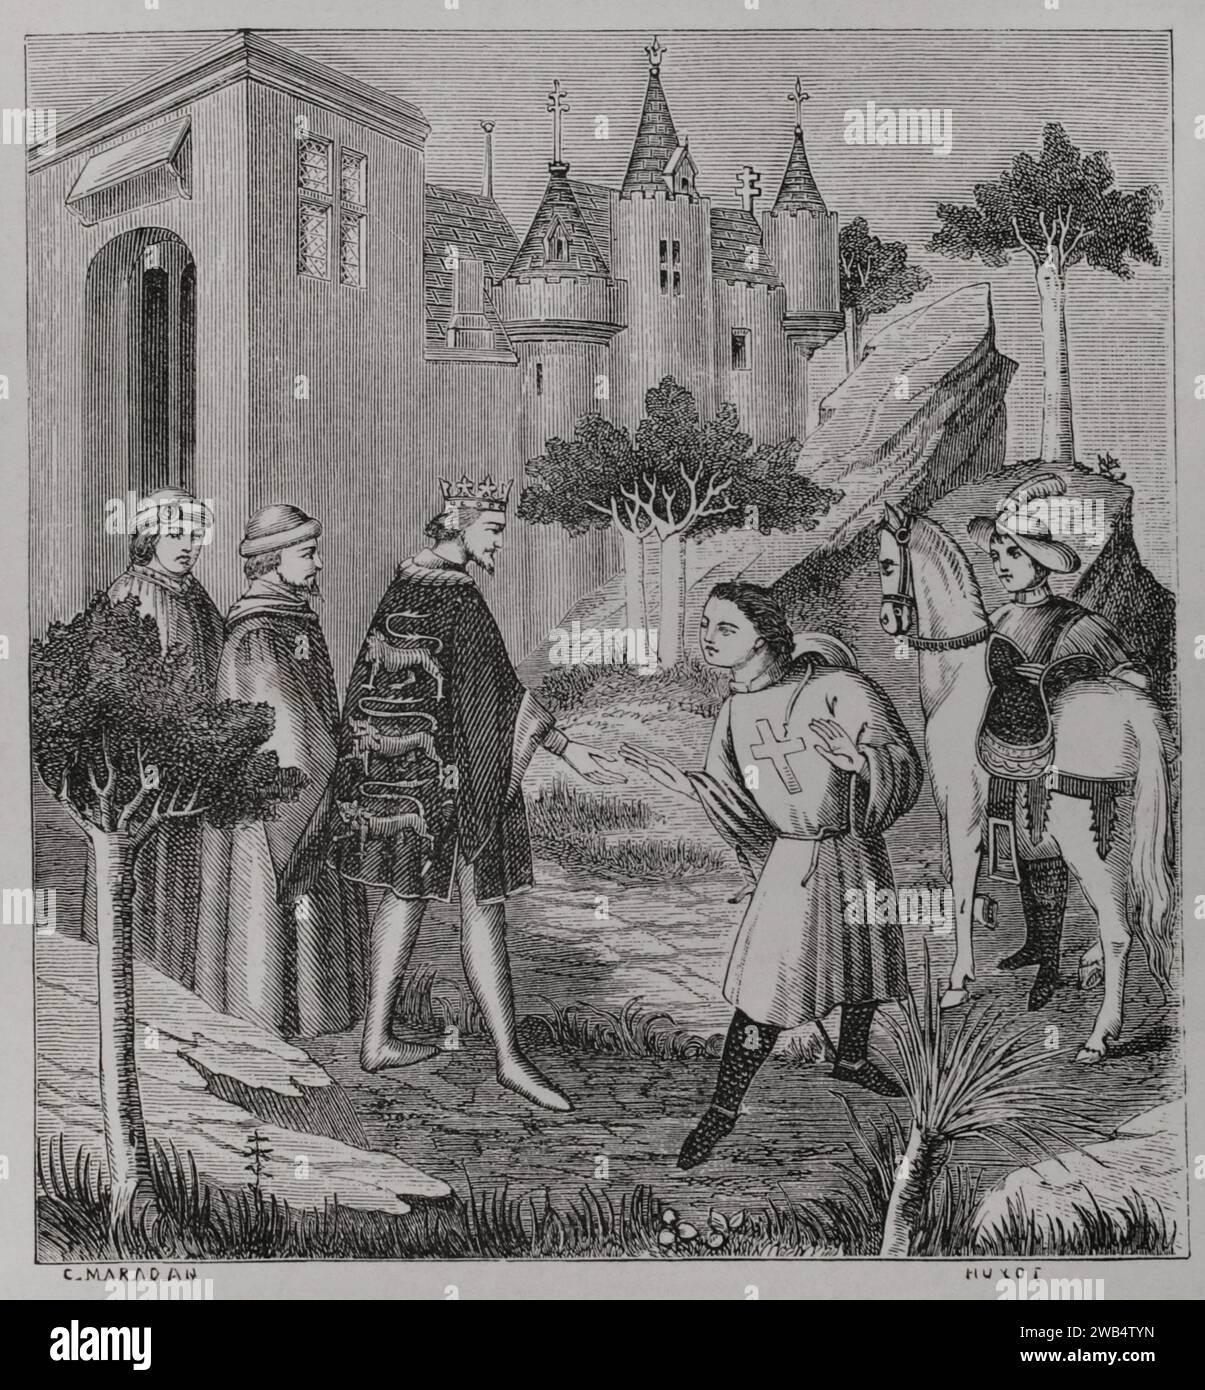 John de Mandeville, celebre personaggio immaginario del libro "i viaggi di Sir John Mandeville" (i viaggi di Mandeville), scritto tra il 1357 e il 1371. Si tratta di un gentiluomo inglese che ha viaggiato per il mondo per trentaquattro anni, raccontando tutto quello che è successo. John de Mandeville prese il congedo di re Edoardo III (1312-1377) prima della sua partenza per "Beyond the Seas". Disegno di C. Maradan. Incisione di Huyot. Dopo una miniatura del XV secolo. Sciences & Lettres au Moyen Age et à l'époque de la Renaissance. Parigi, 1877. Foto Stock